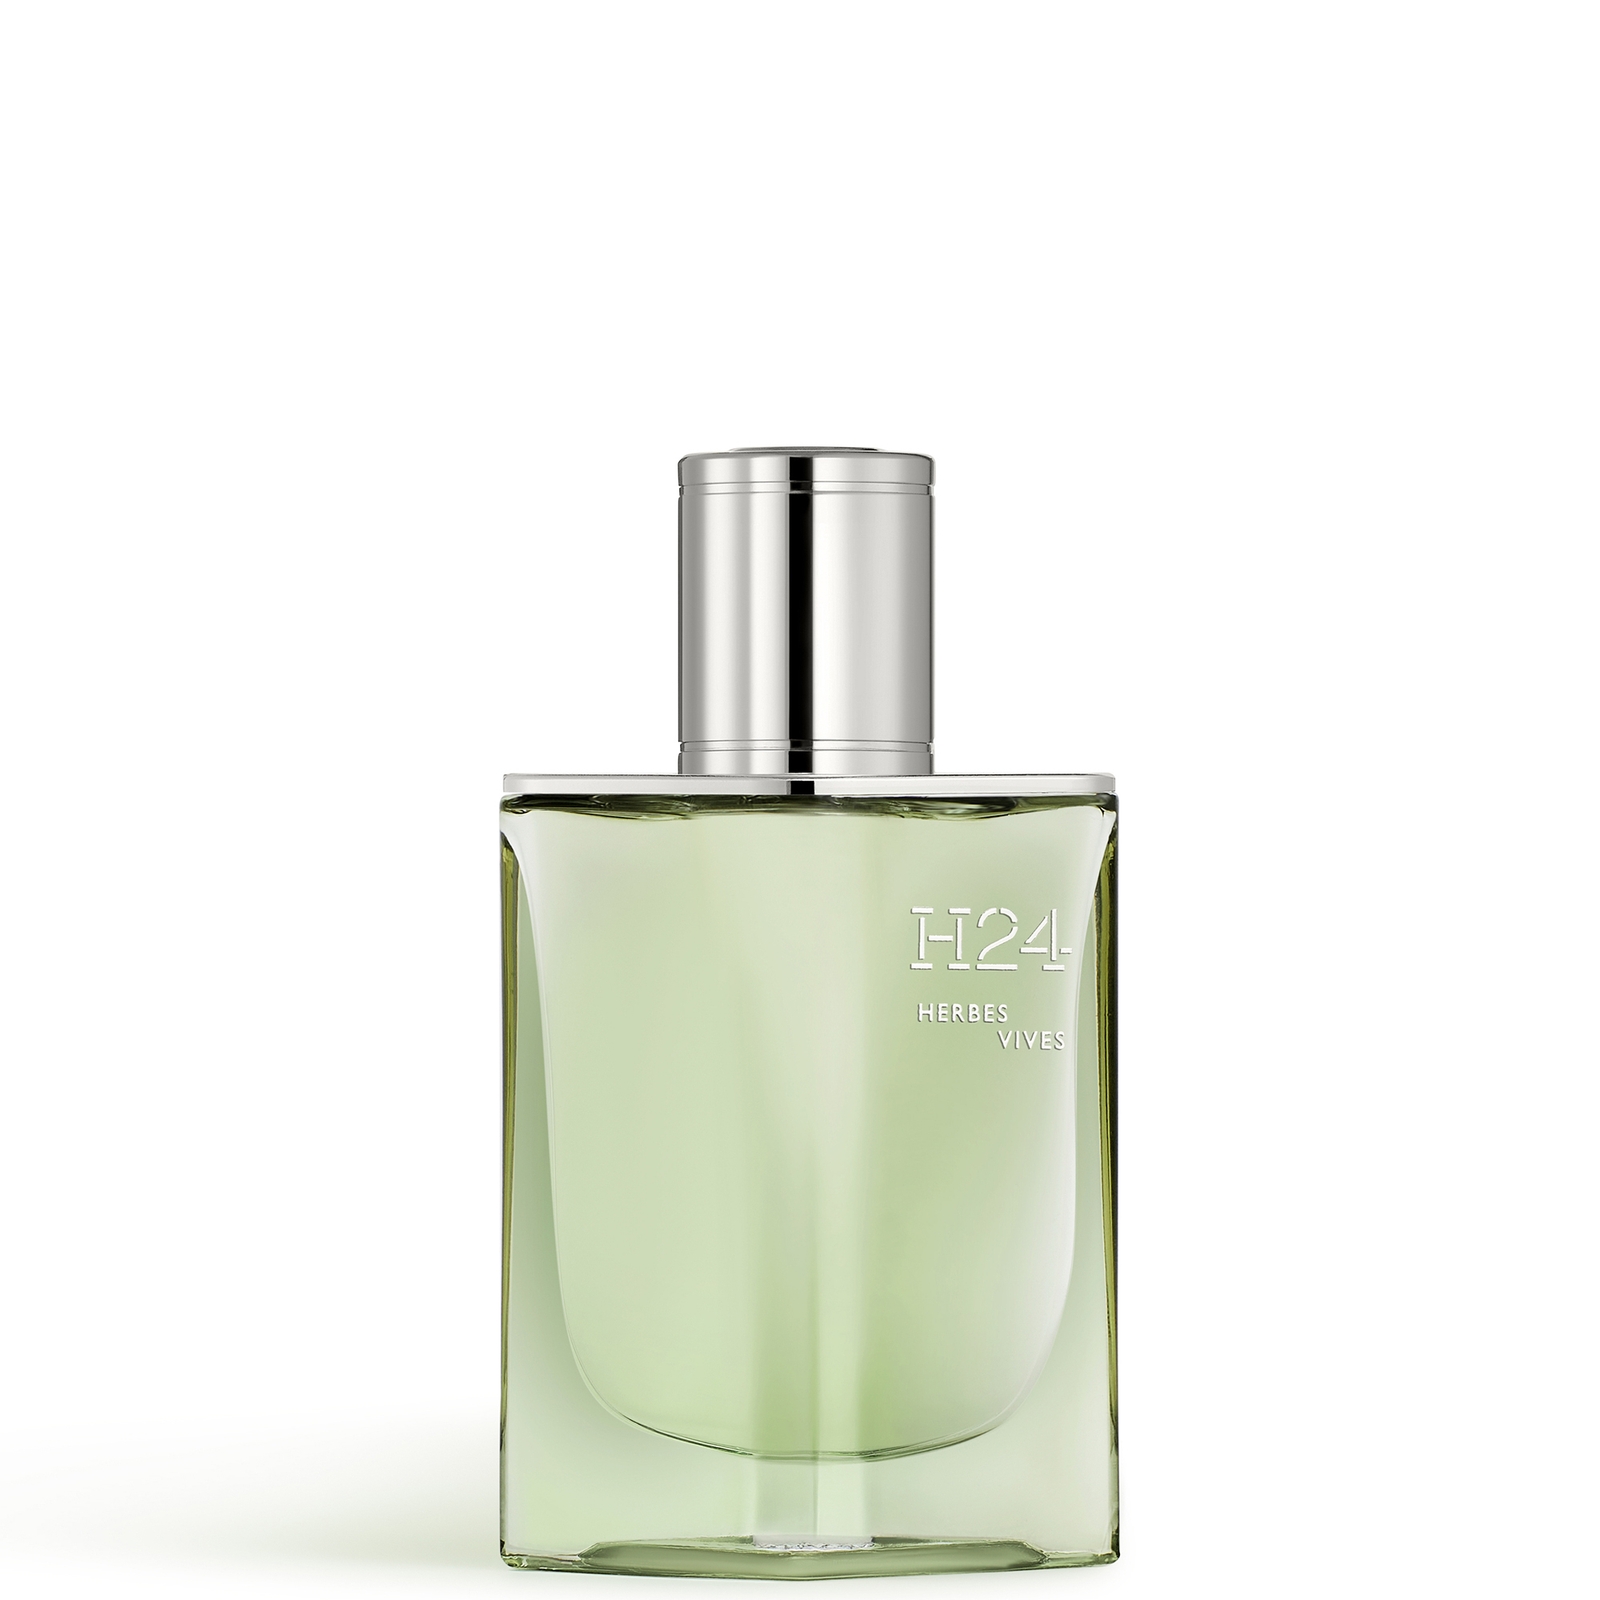 Shop Hermes H24 Herbes Vives Eau De Parfum 50ml